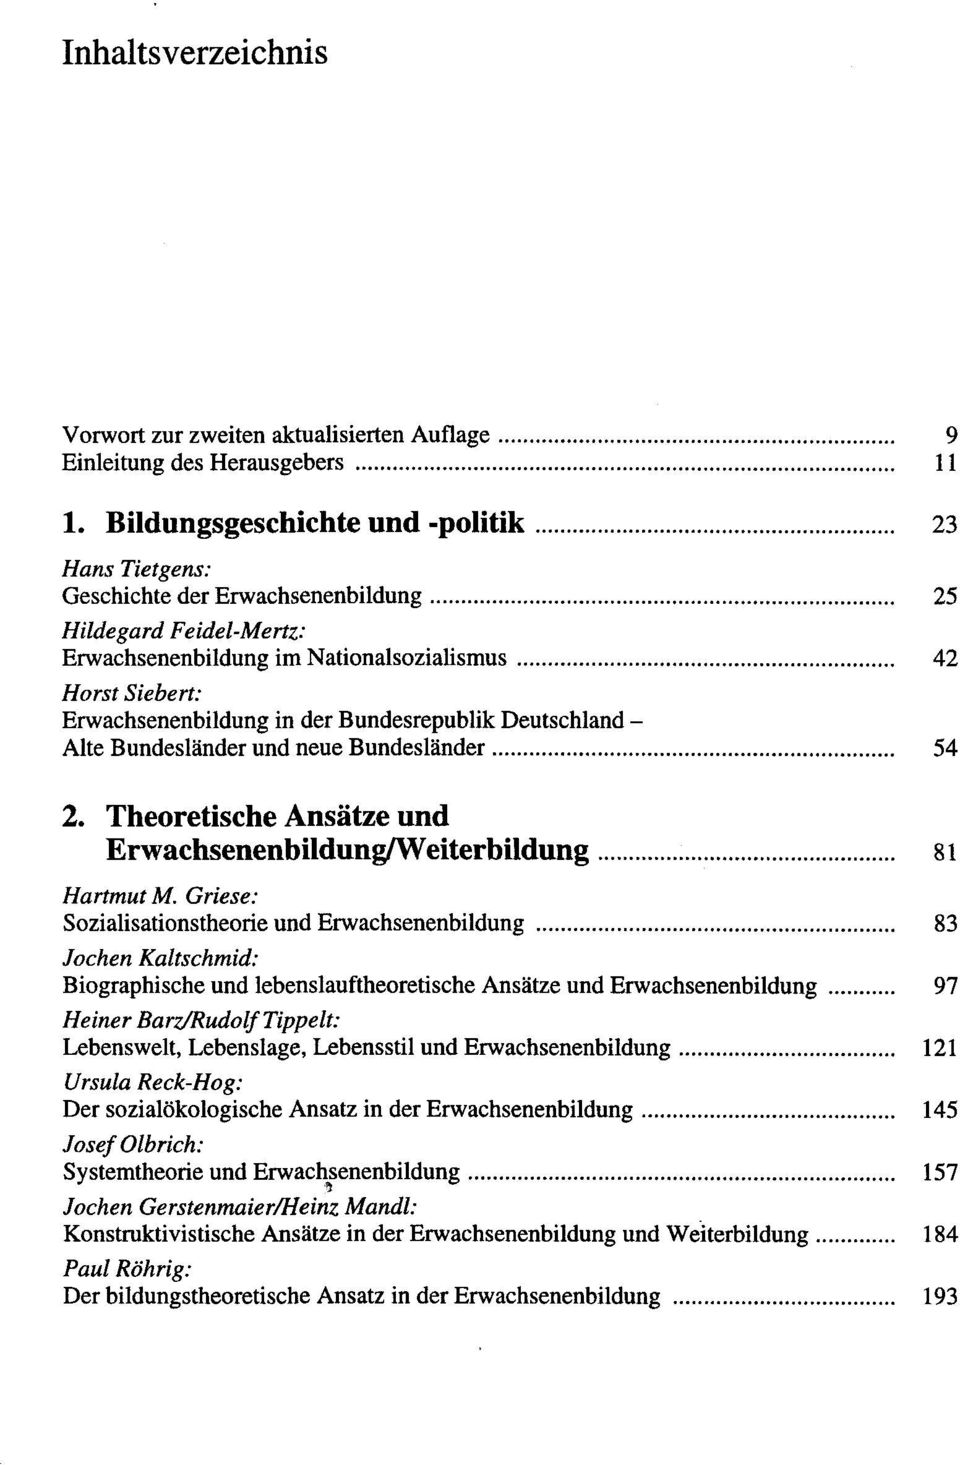 Bundesrepublik Deutschland - Alte Bundesländer und neue Bundesländer 54 2. Theoretische Ansätze und Erwachsenenbildung/Weiterbildung 81 Hartmut M.